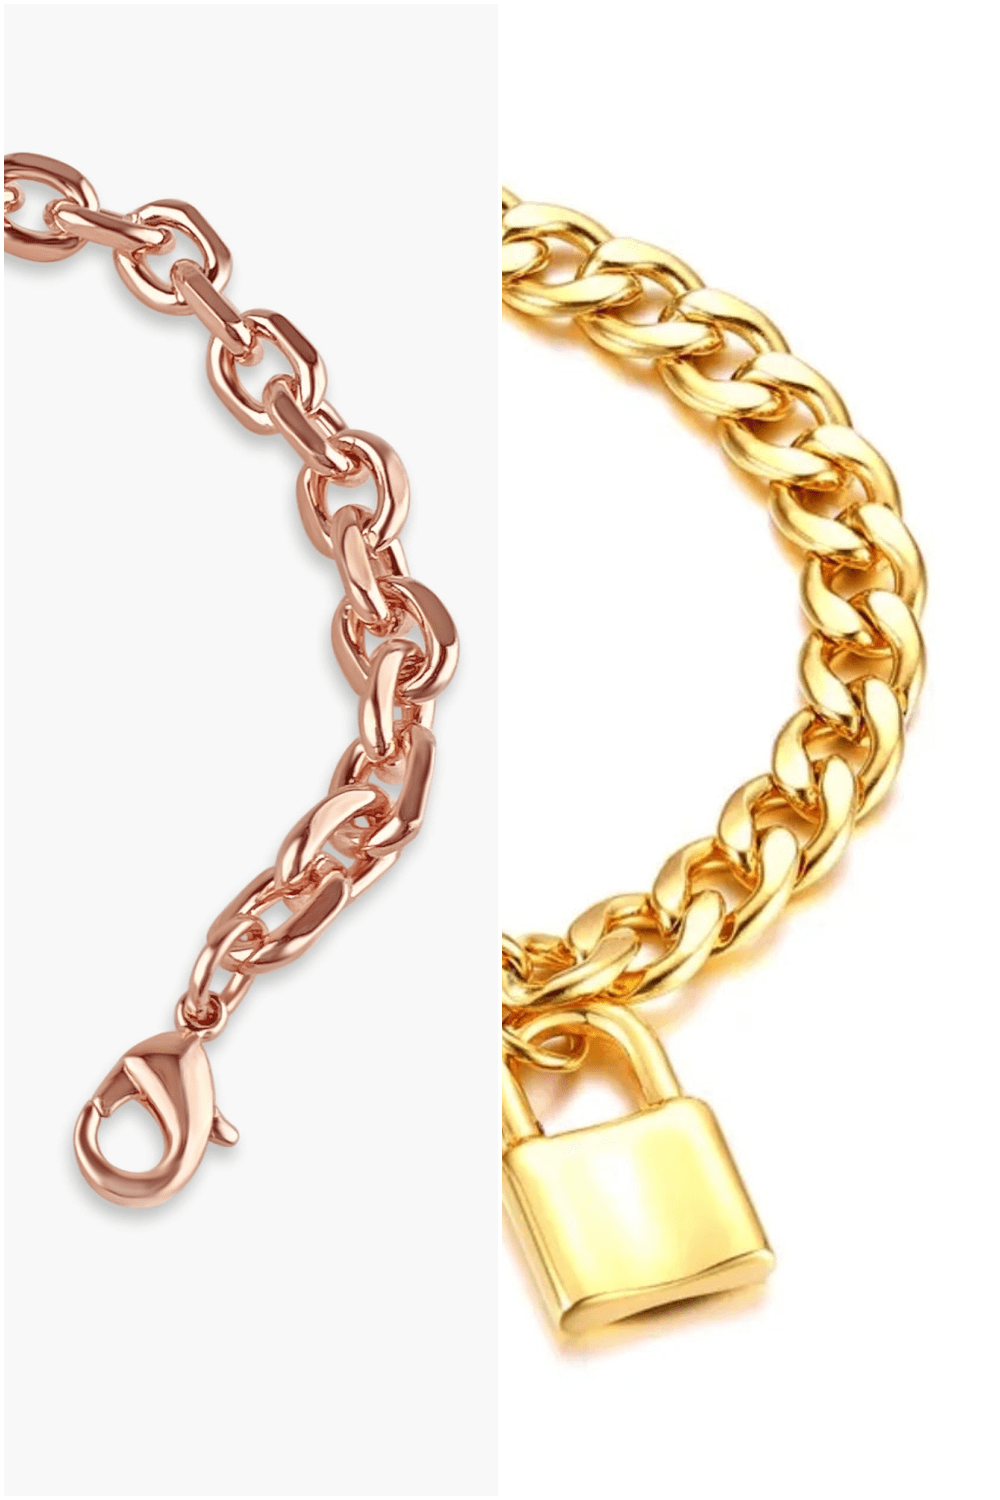 Glamorous Lock and Key Bracelet Bundle